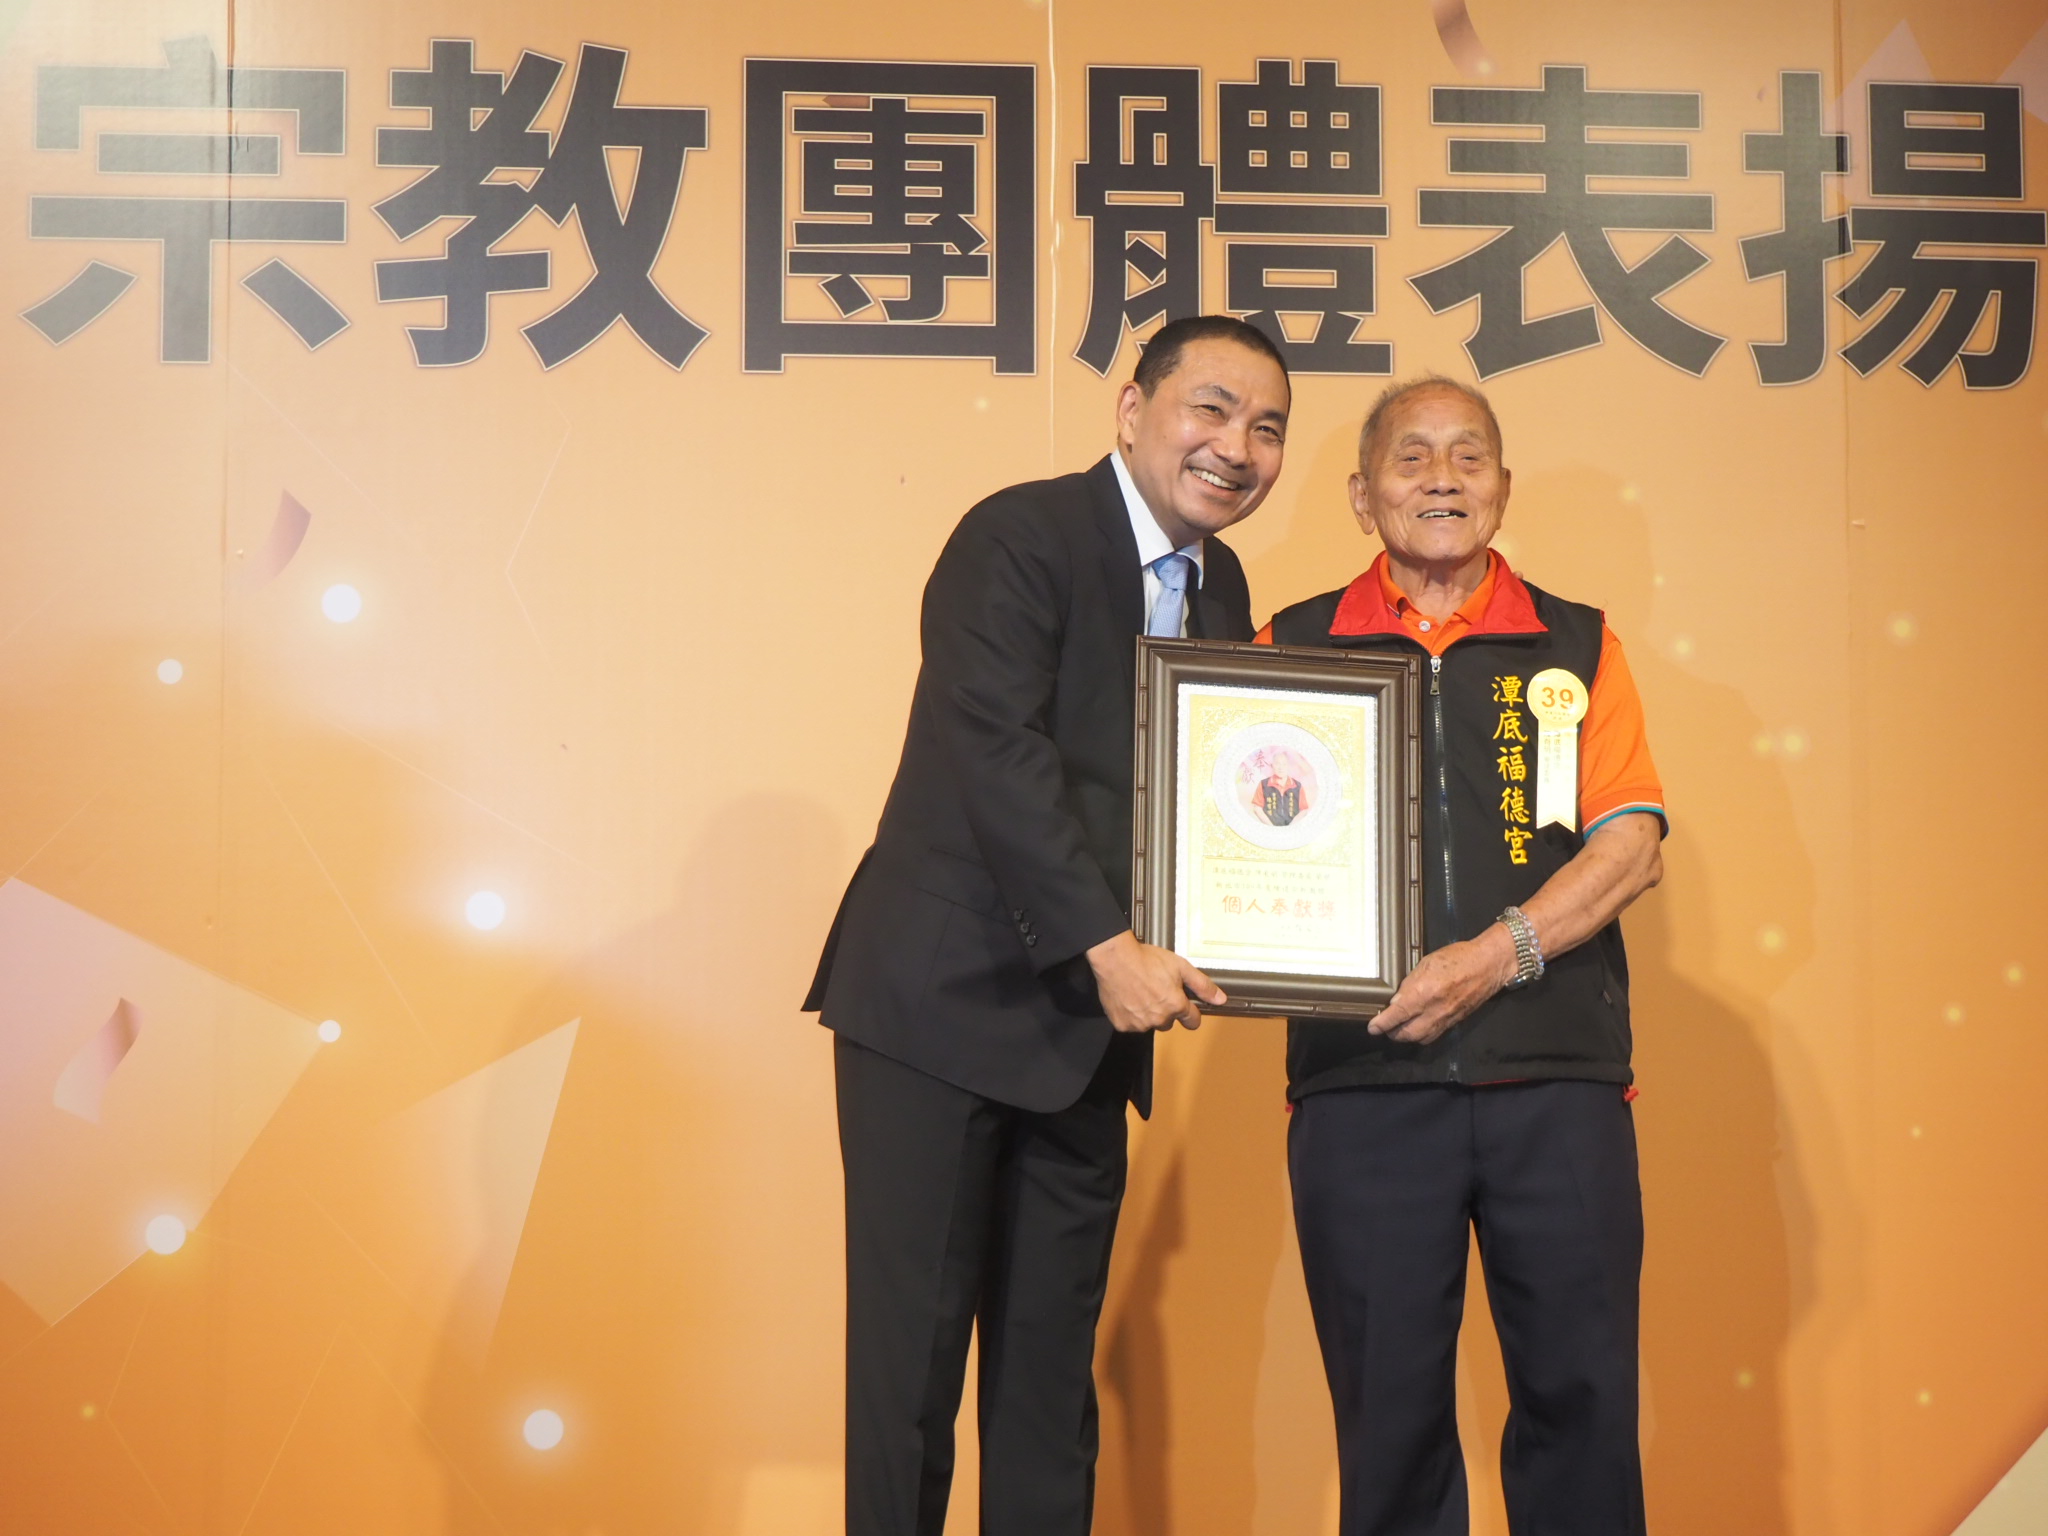 90歲的樹林潭底福德宮管理委員陳有明，獲個人奉獻類獎項，是今年得獎者最高齡者。